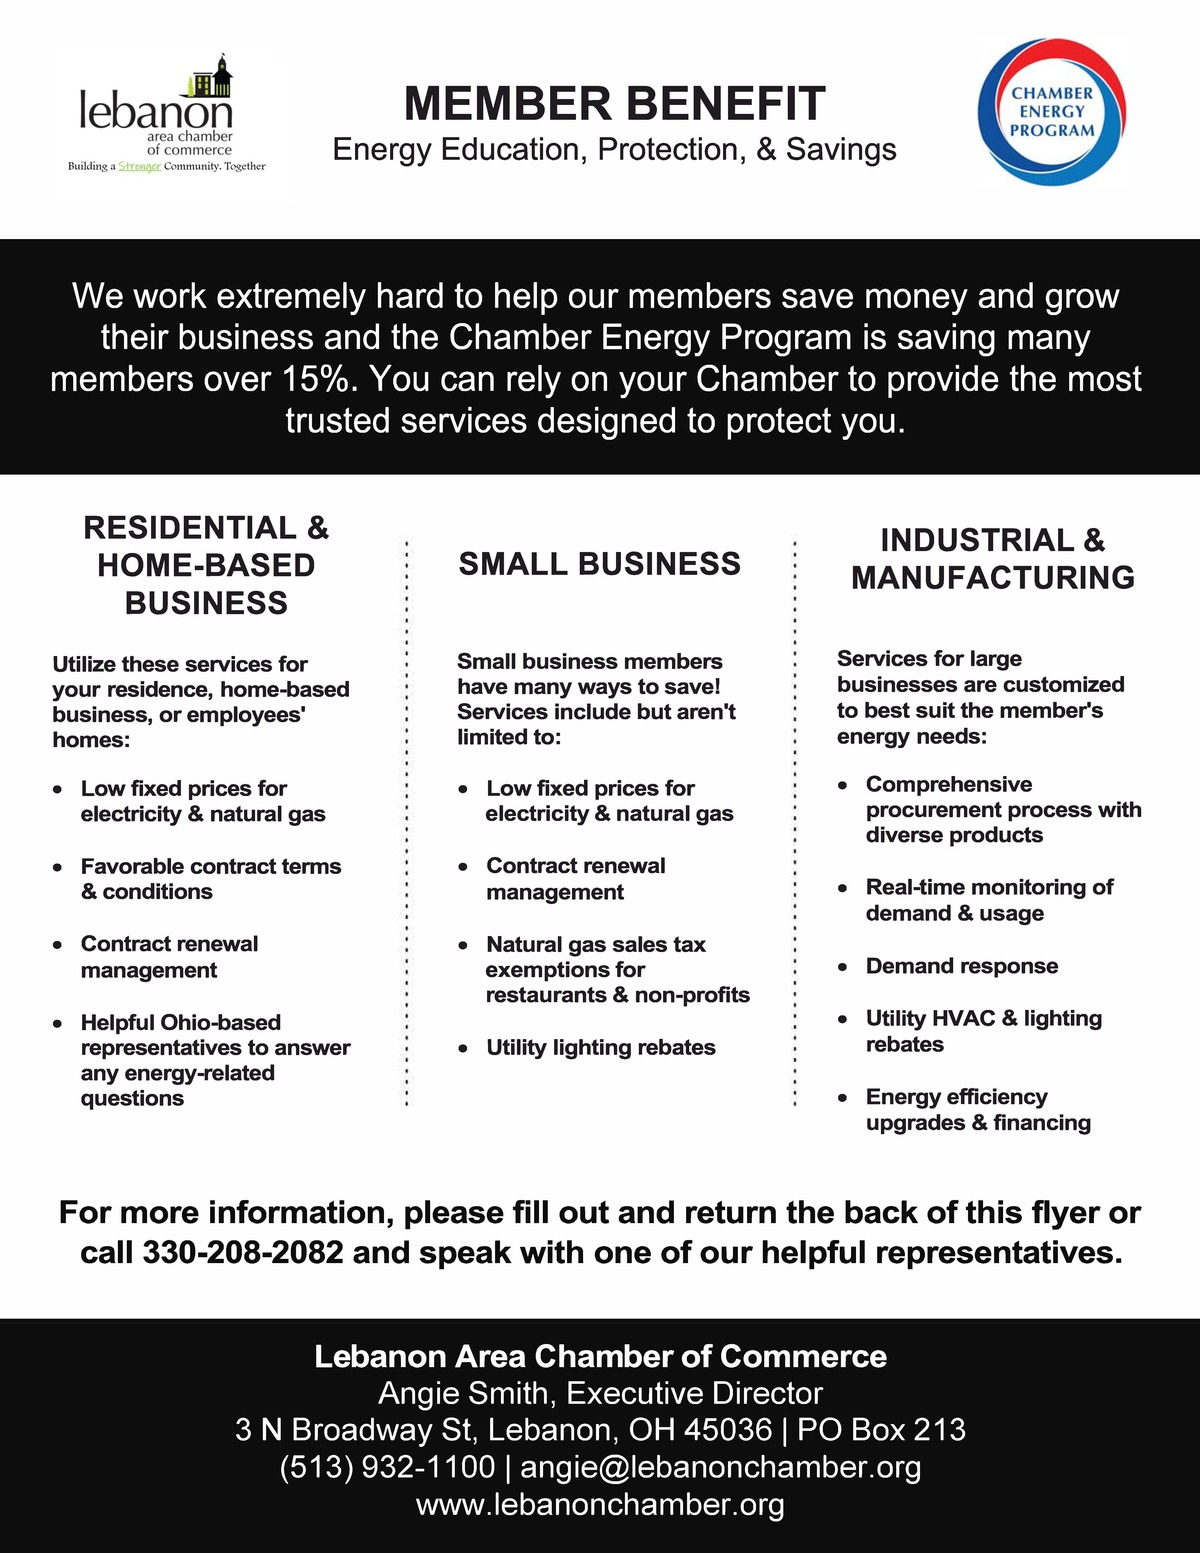 Member Benefits of Chamber Energy Program flyer